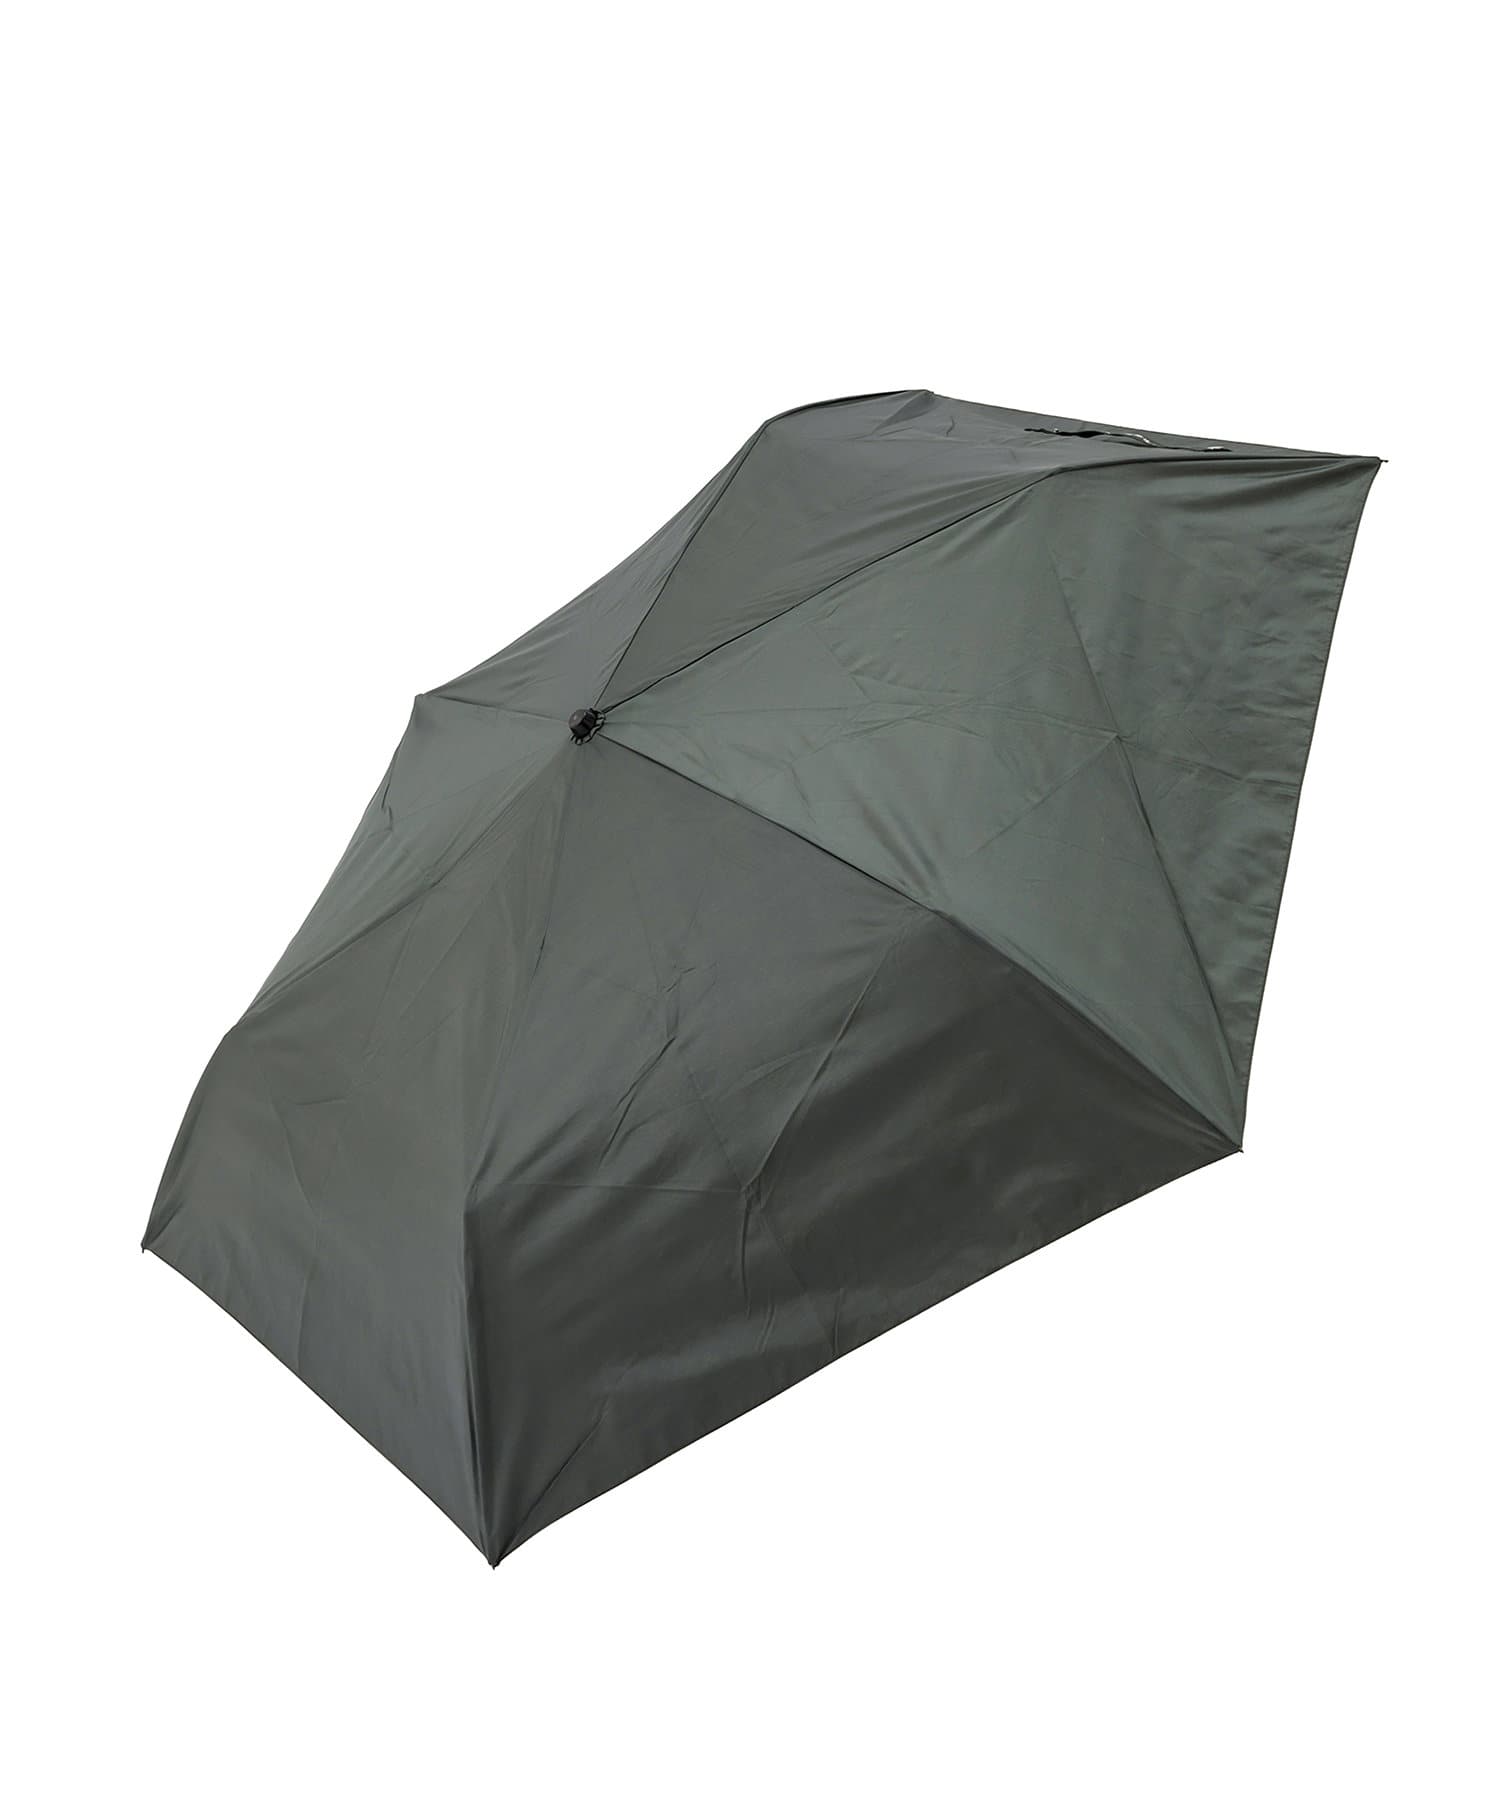 3COINS(スリーコインズ) 晴雨兼用折傘持ち手カラビナ